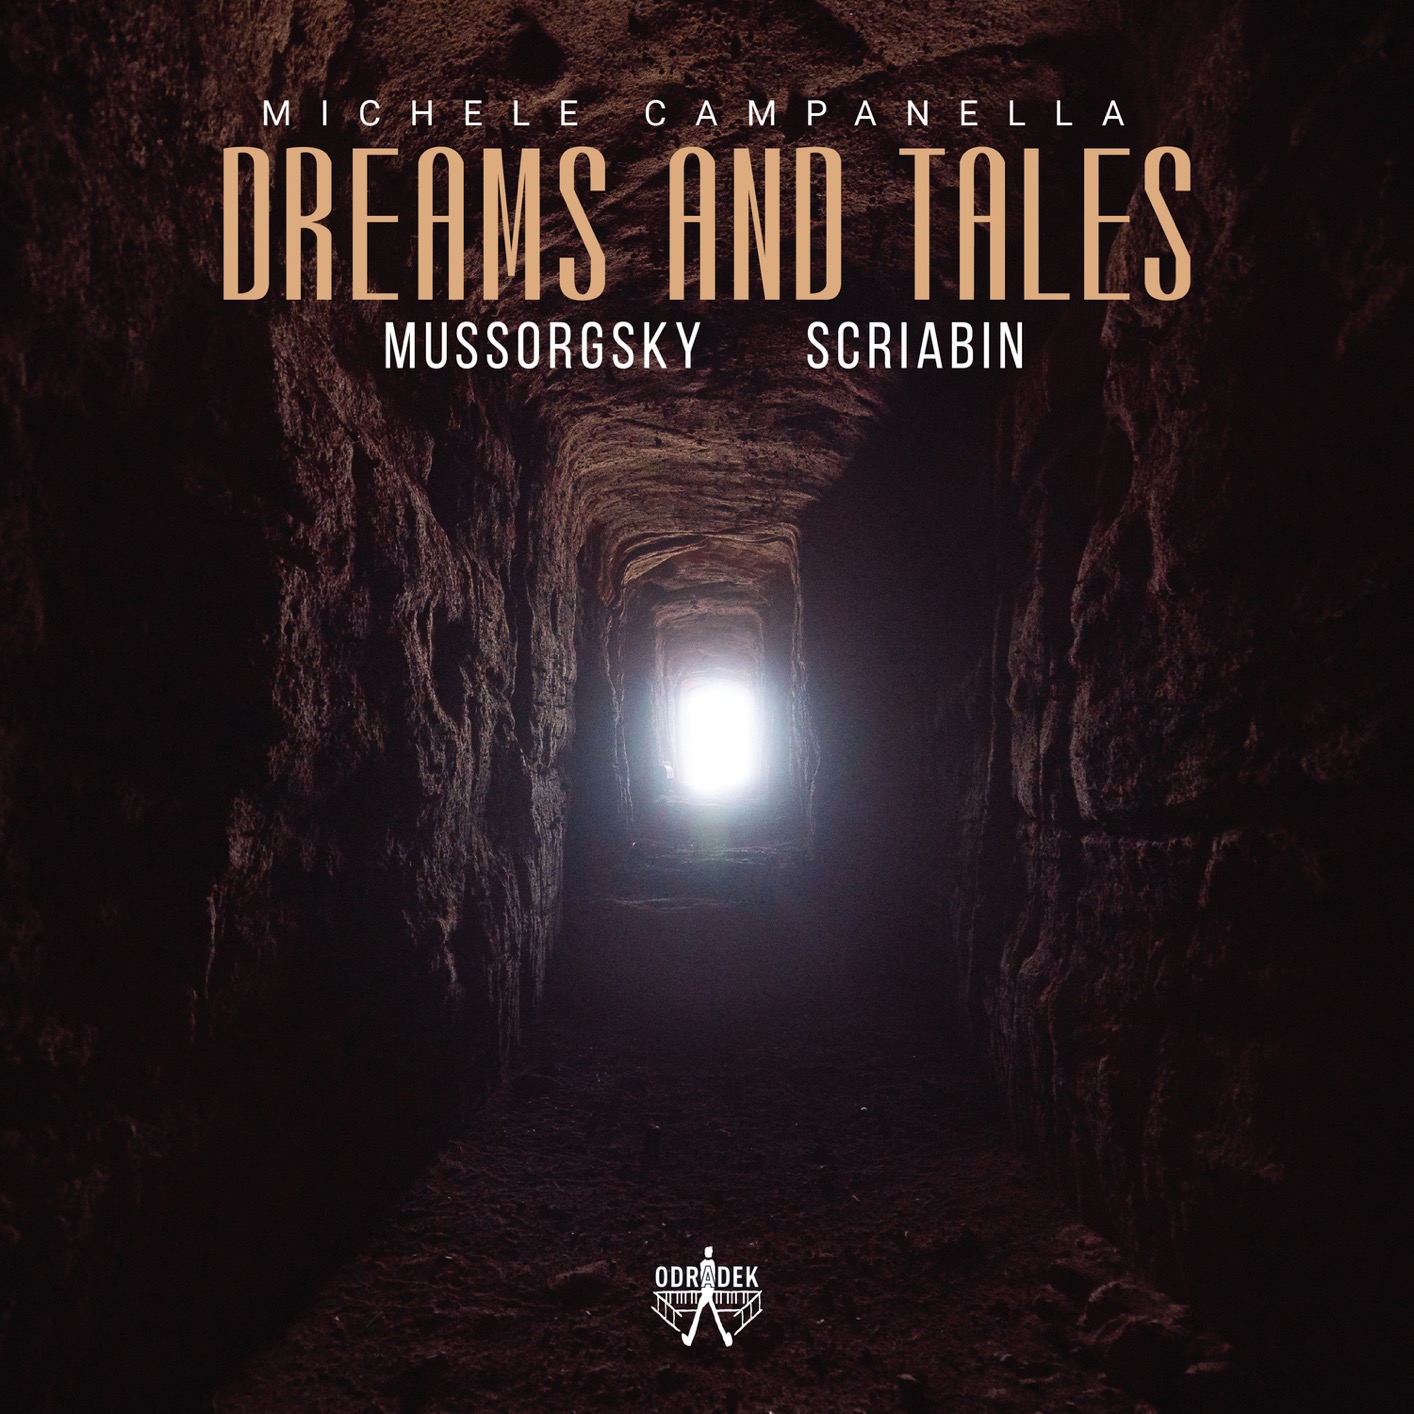 Michele Campanella - Dreams and Tales: Mussorgsky - Scriabin (2021) [FLAC 24bit/96kHz]